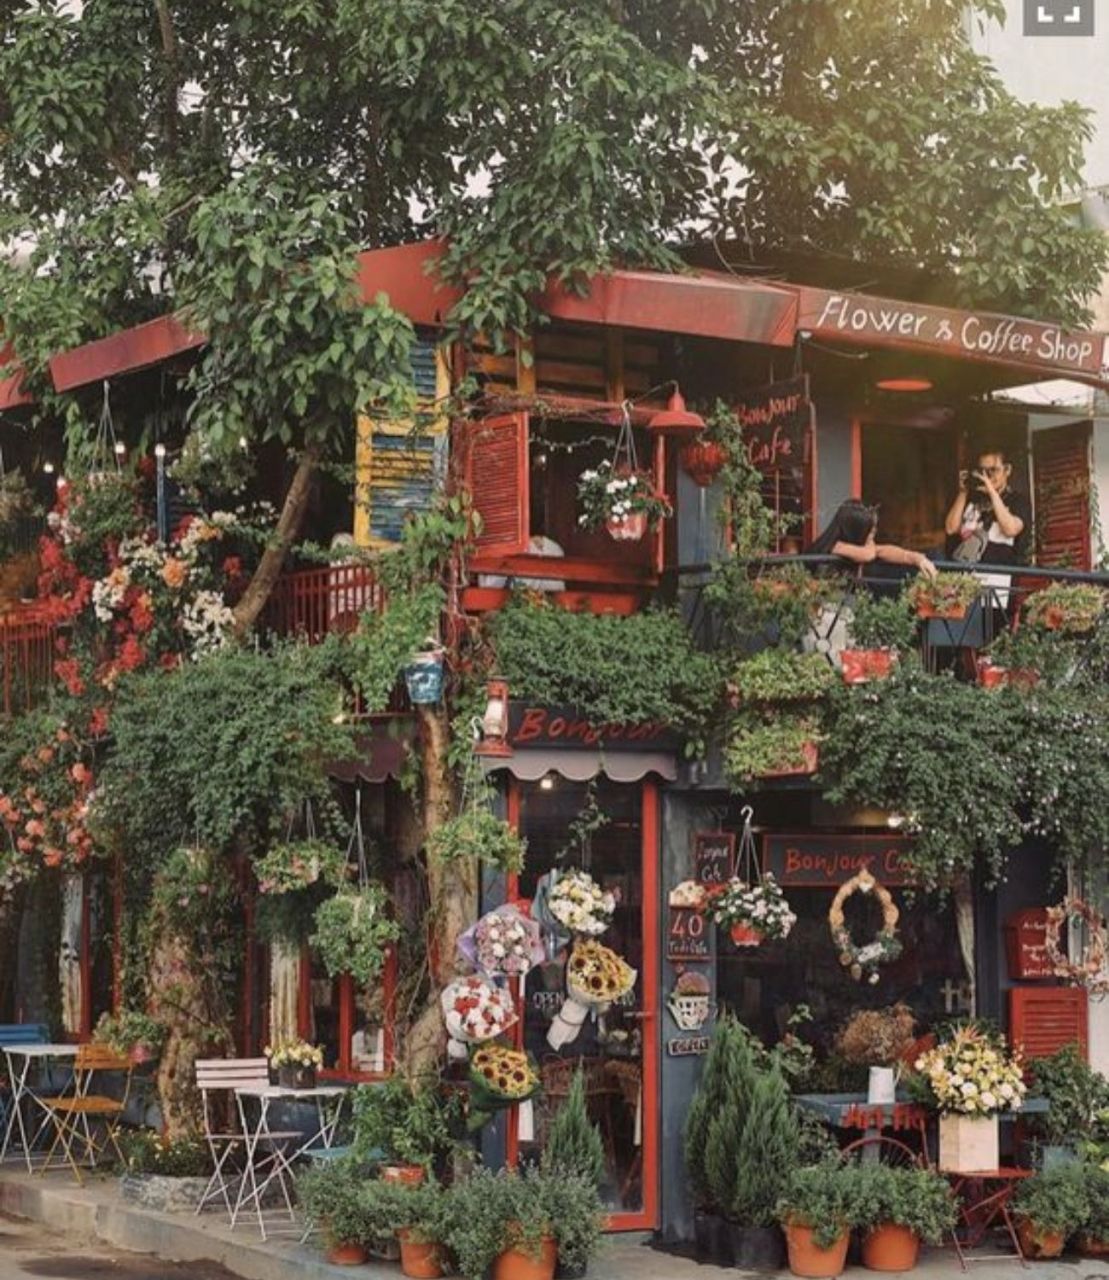 Ý tưởng 24: Tận dụng cây cao để trang trí quán cafe độc nhất vô nhị